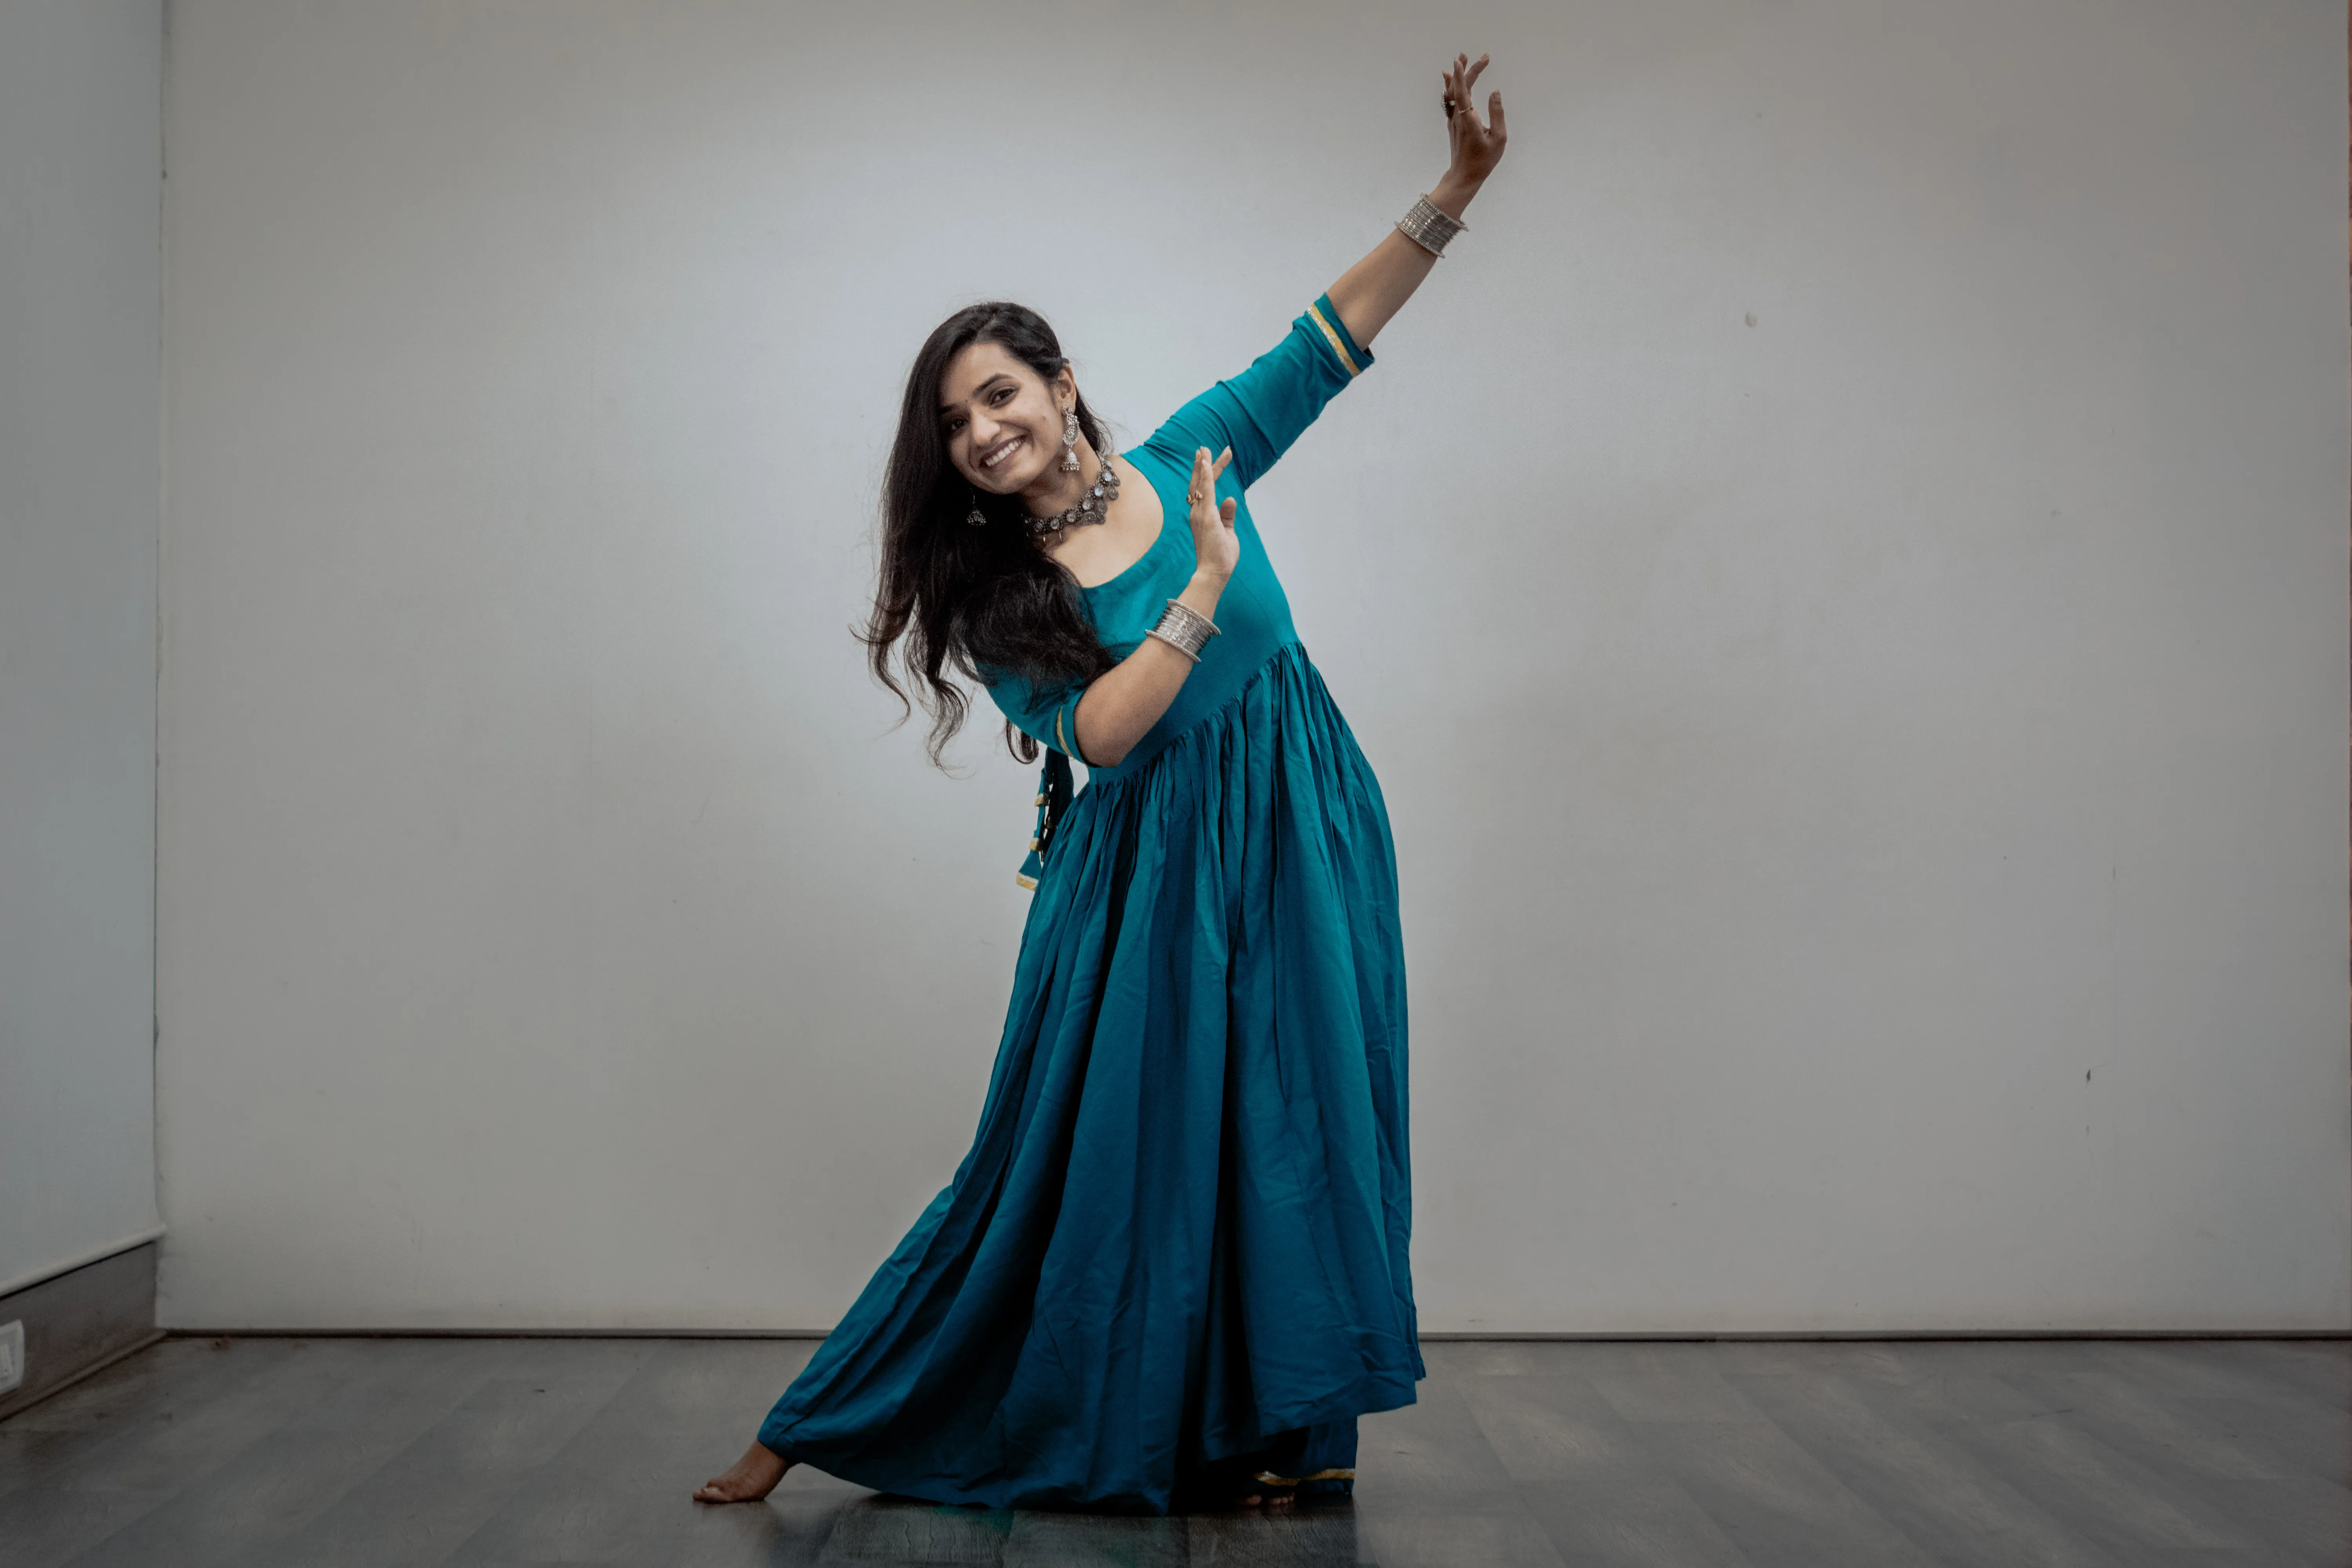 Learn Semiclassical Dance from Scratch by Monikka Kalurkar